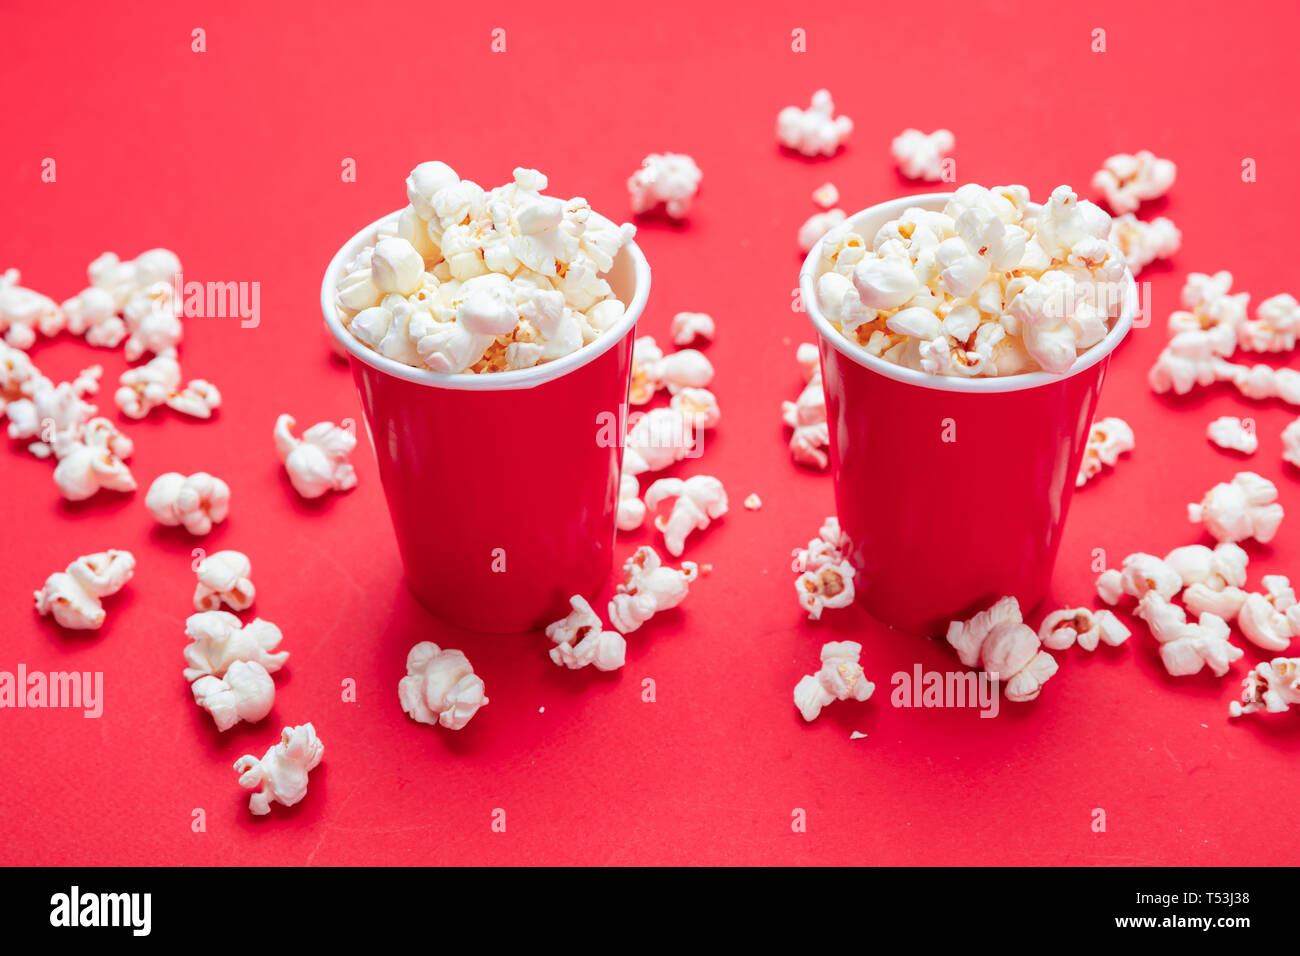 Frische salzige Popcorn in zwei roten Karton Container, rote Farbe Hintergrund, Detailansicht Stockfoto